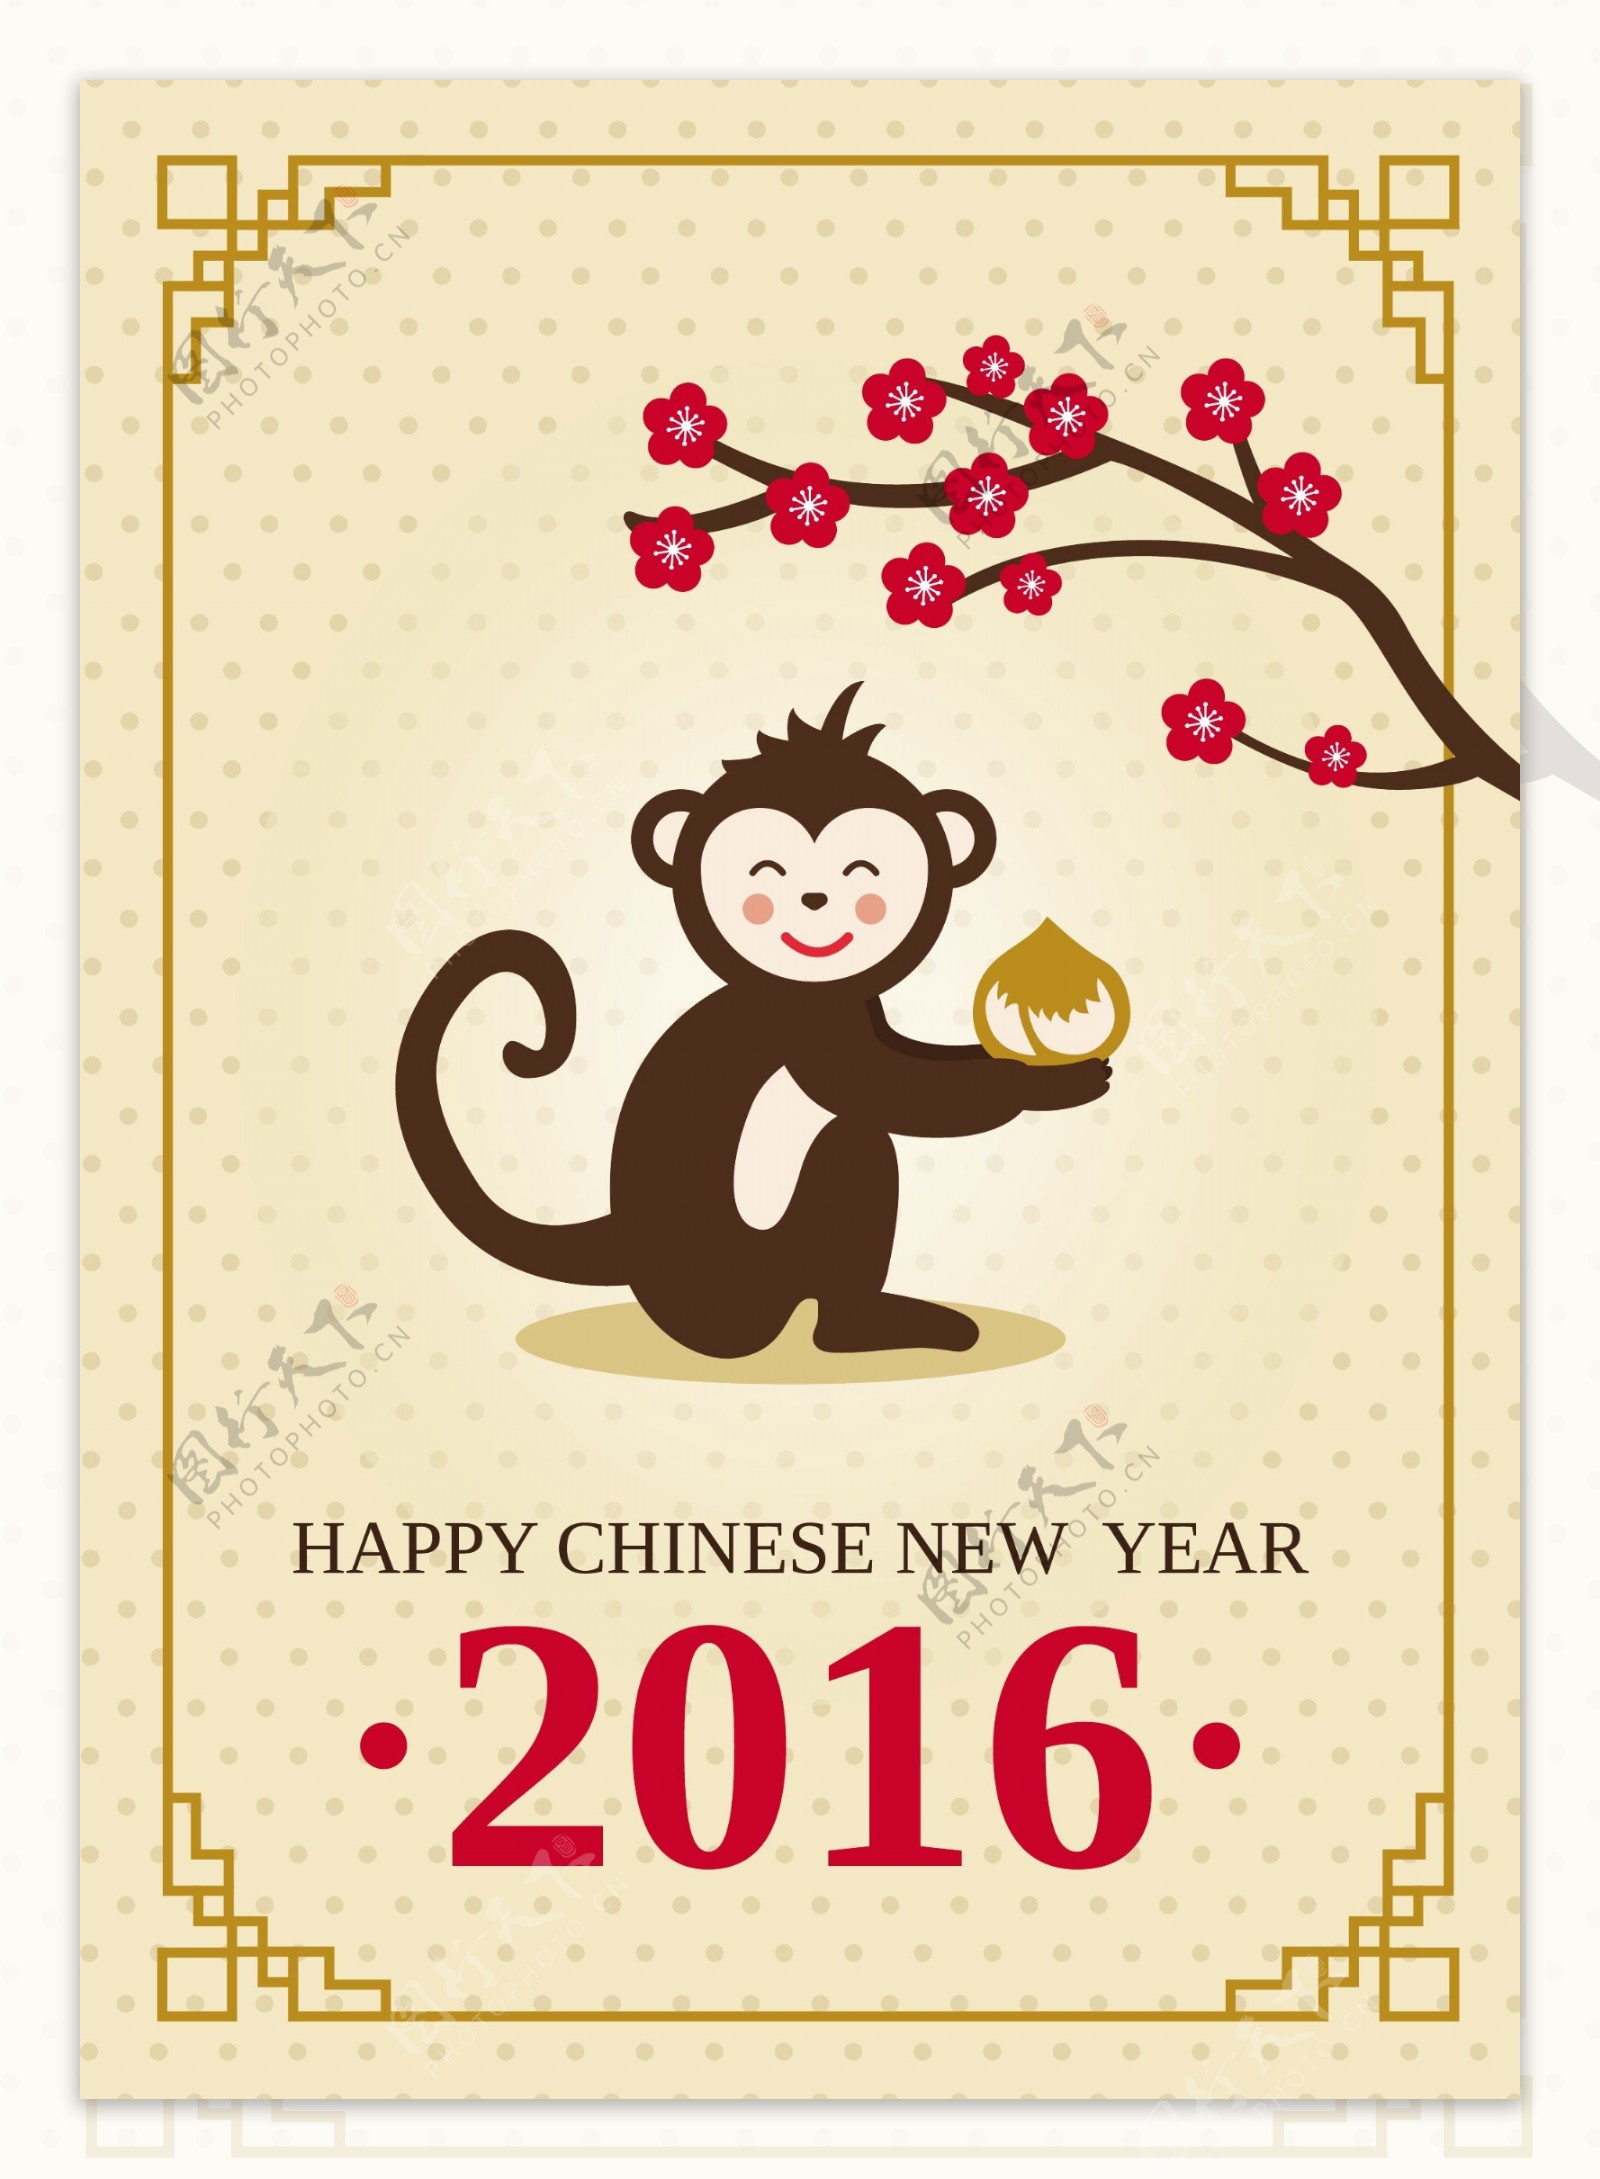 中国的新年贺卡和一只可爱的猴子